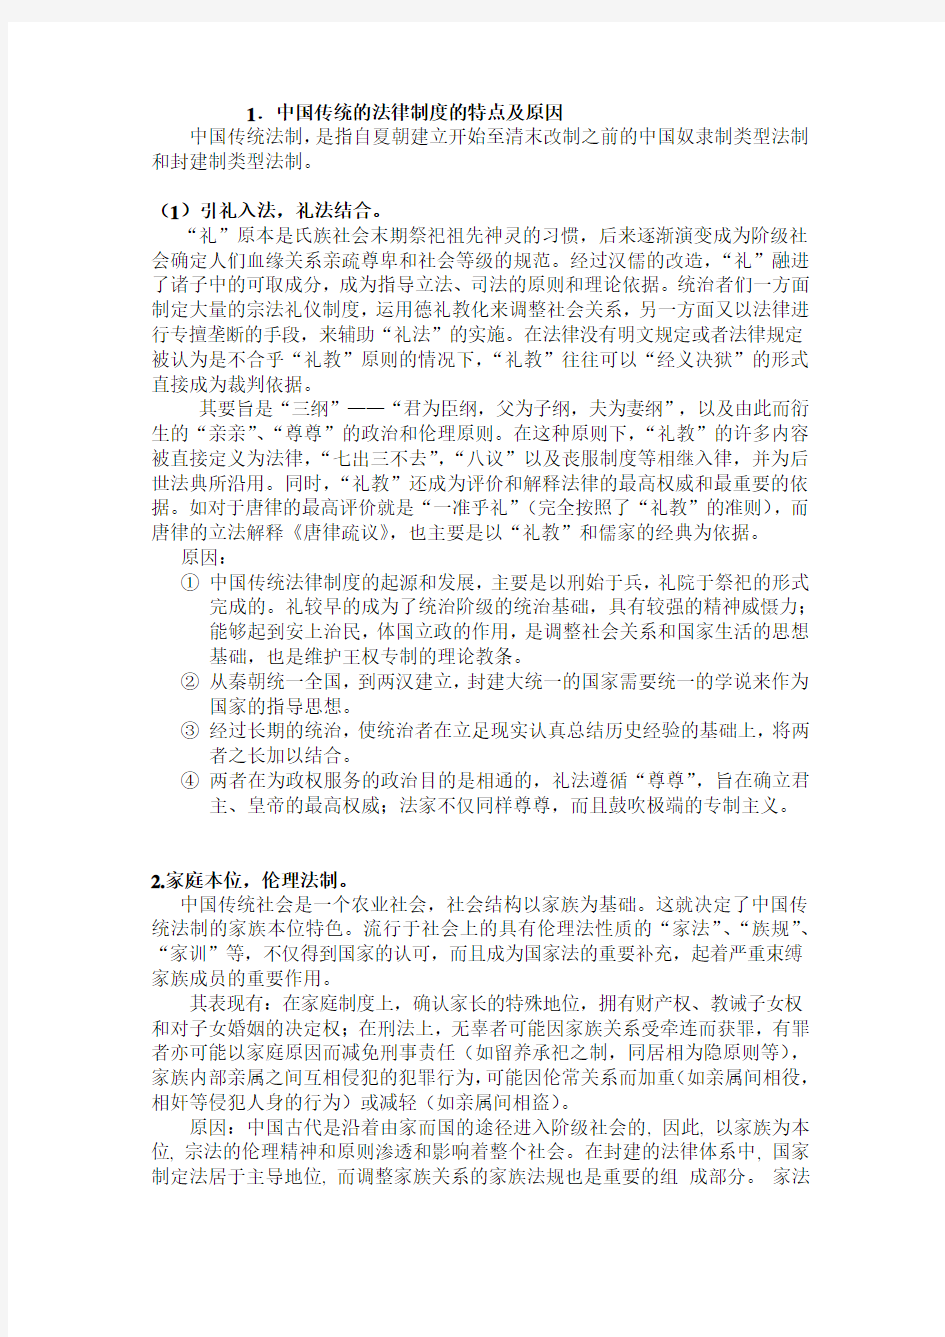 1.中国传统的法律制度的特点及原因